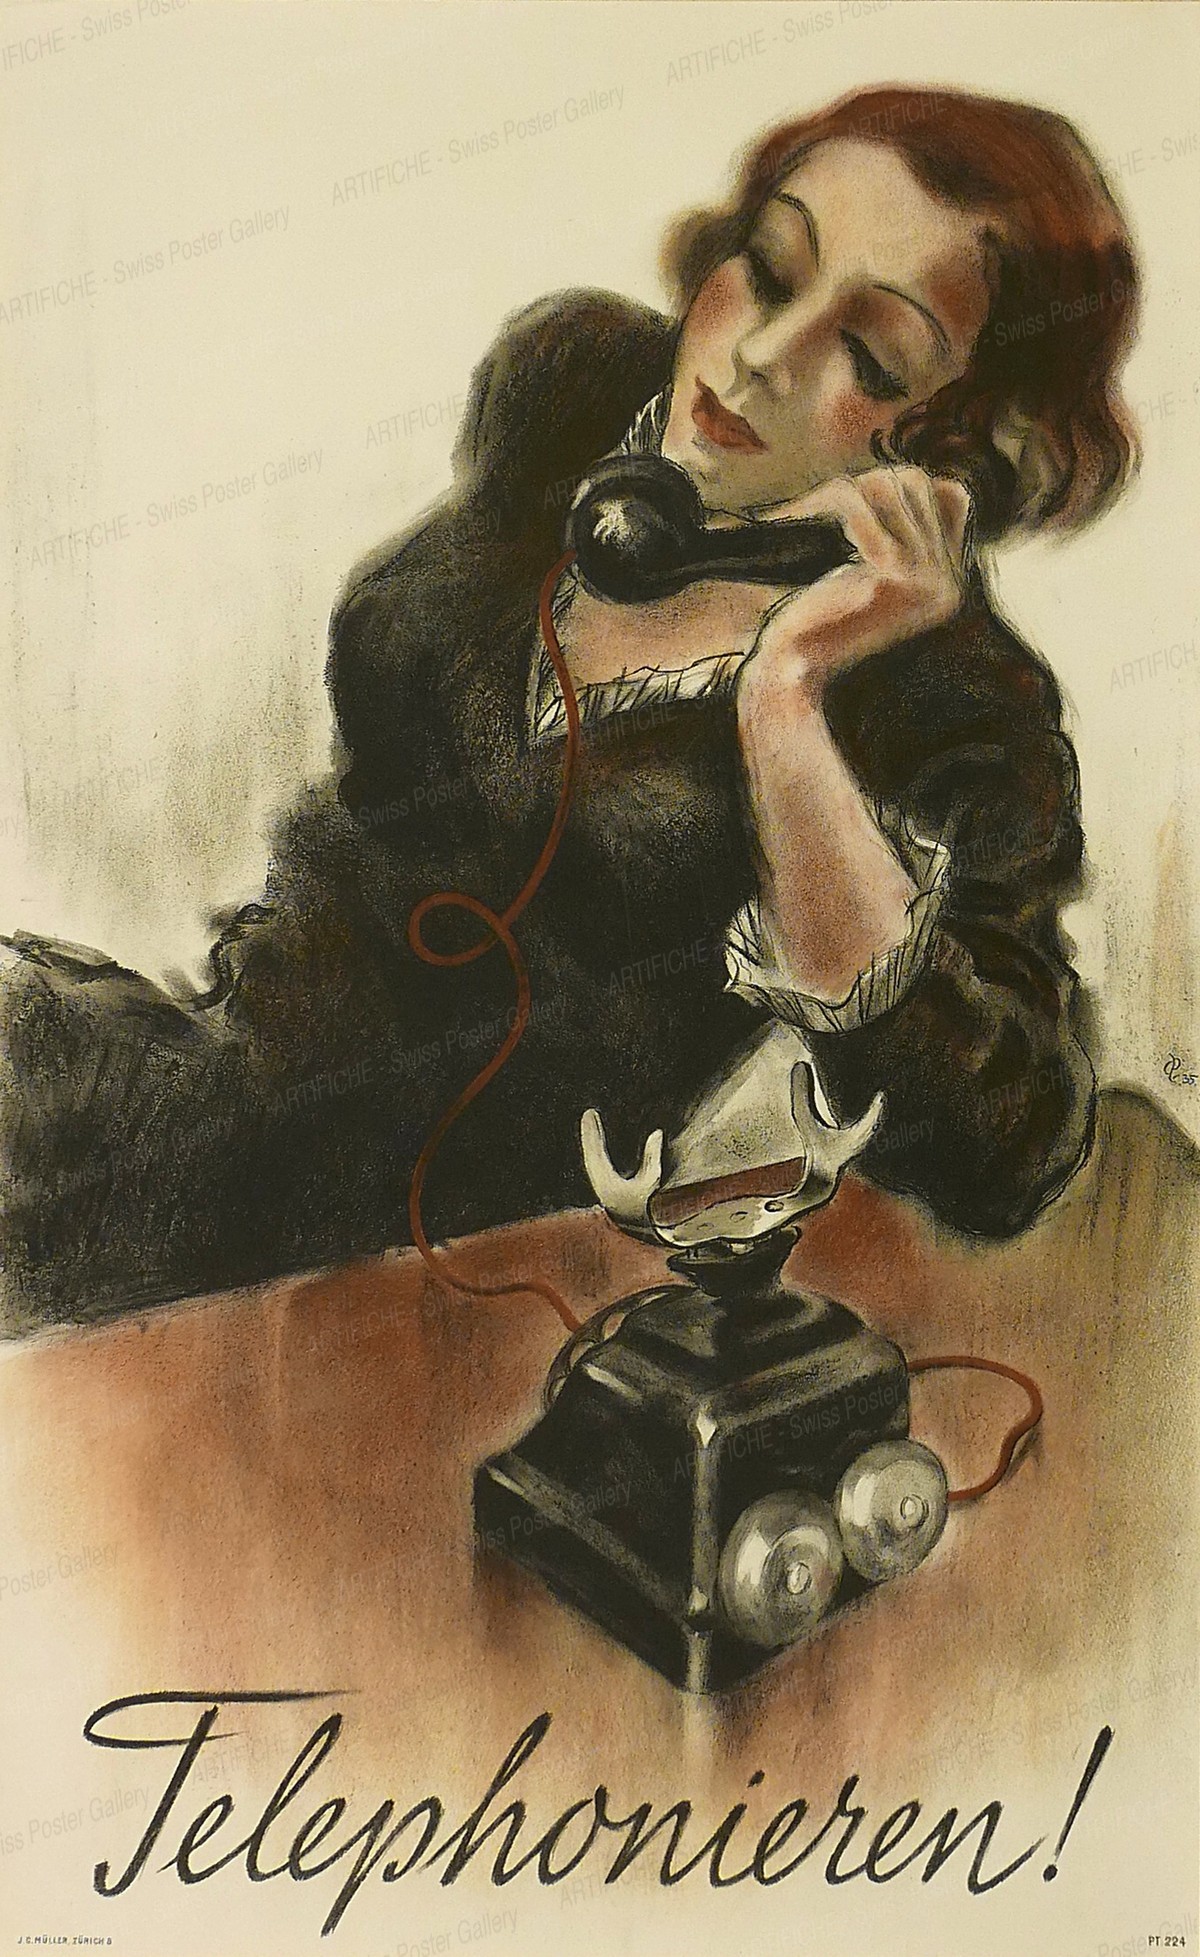 Telephonieren!, Hugo Laubi